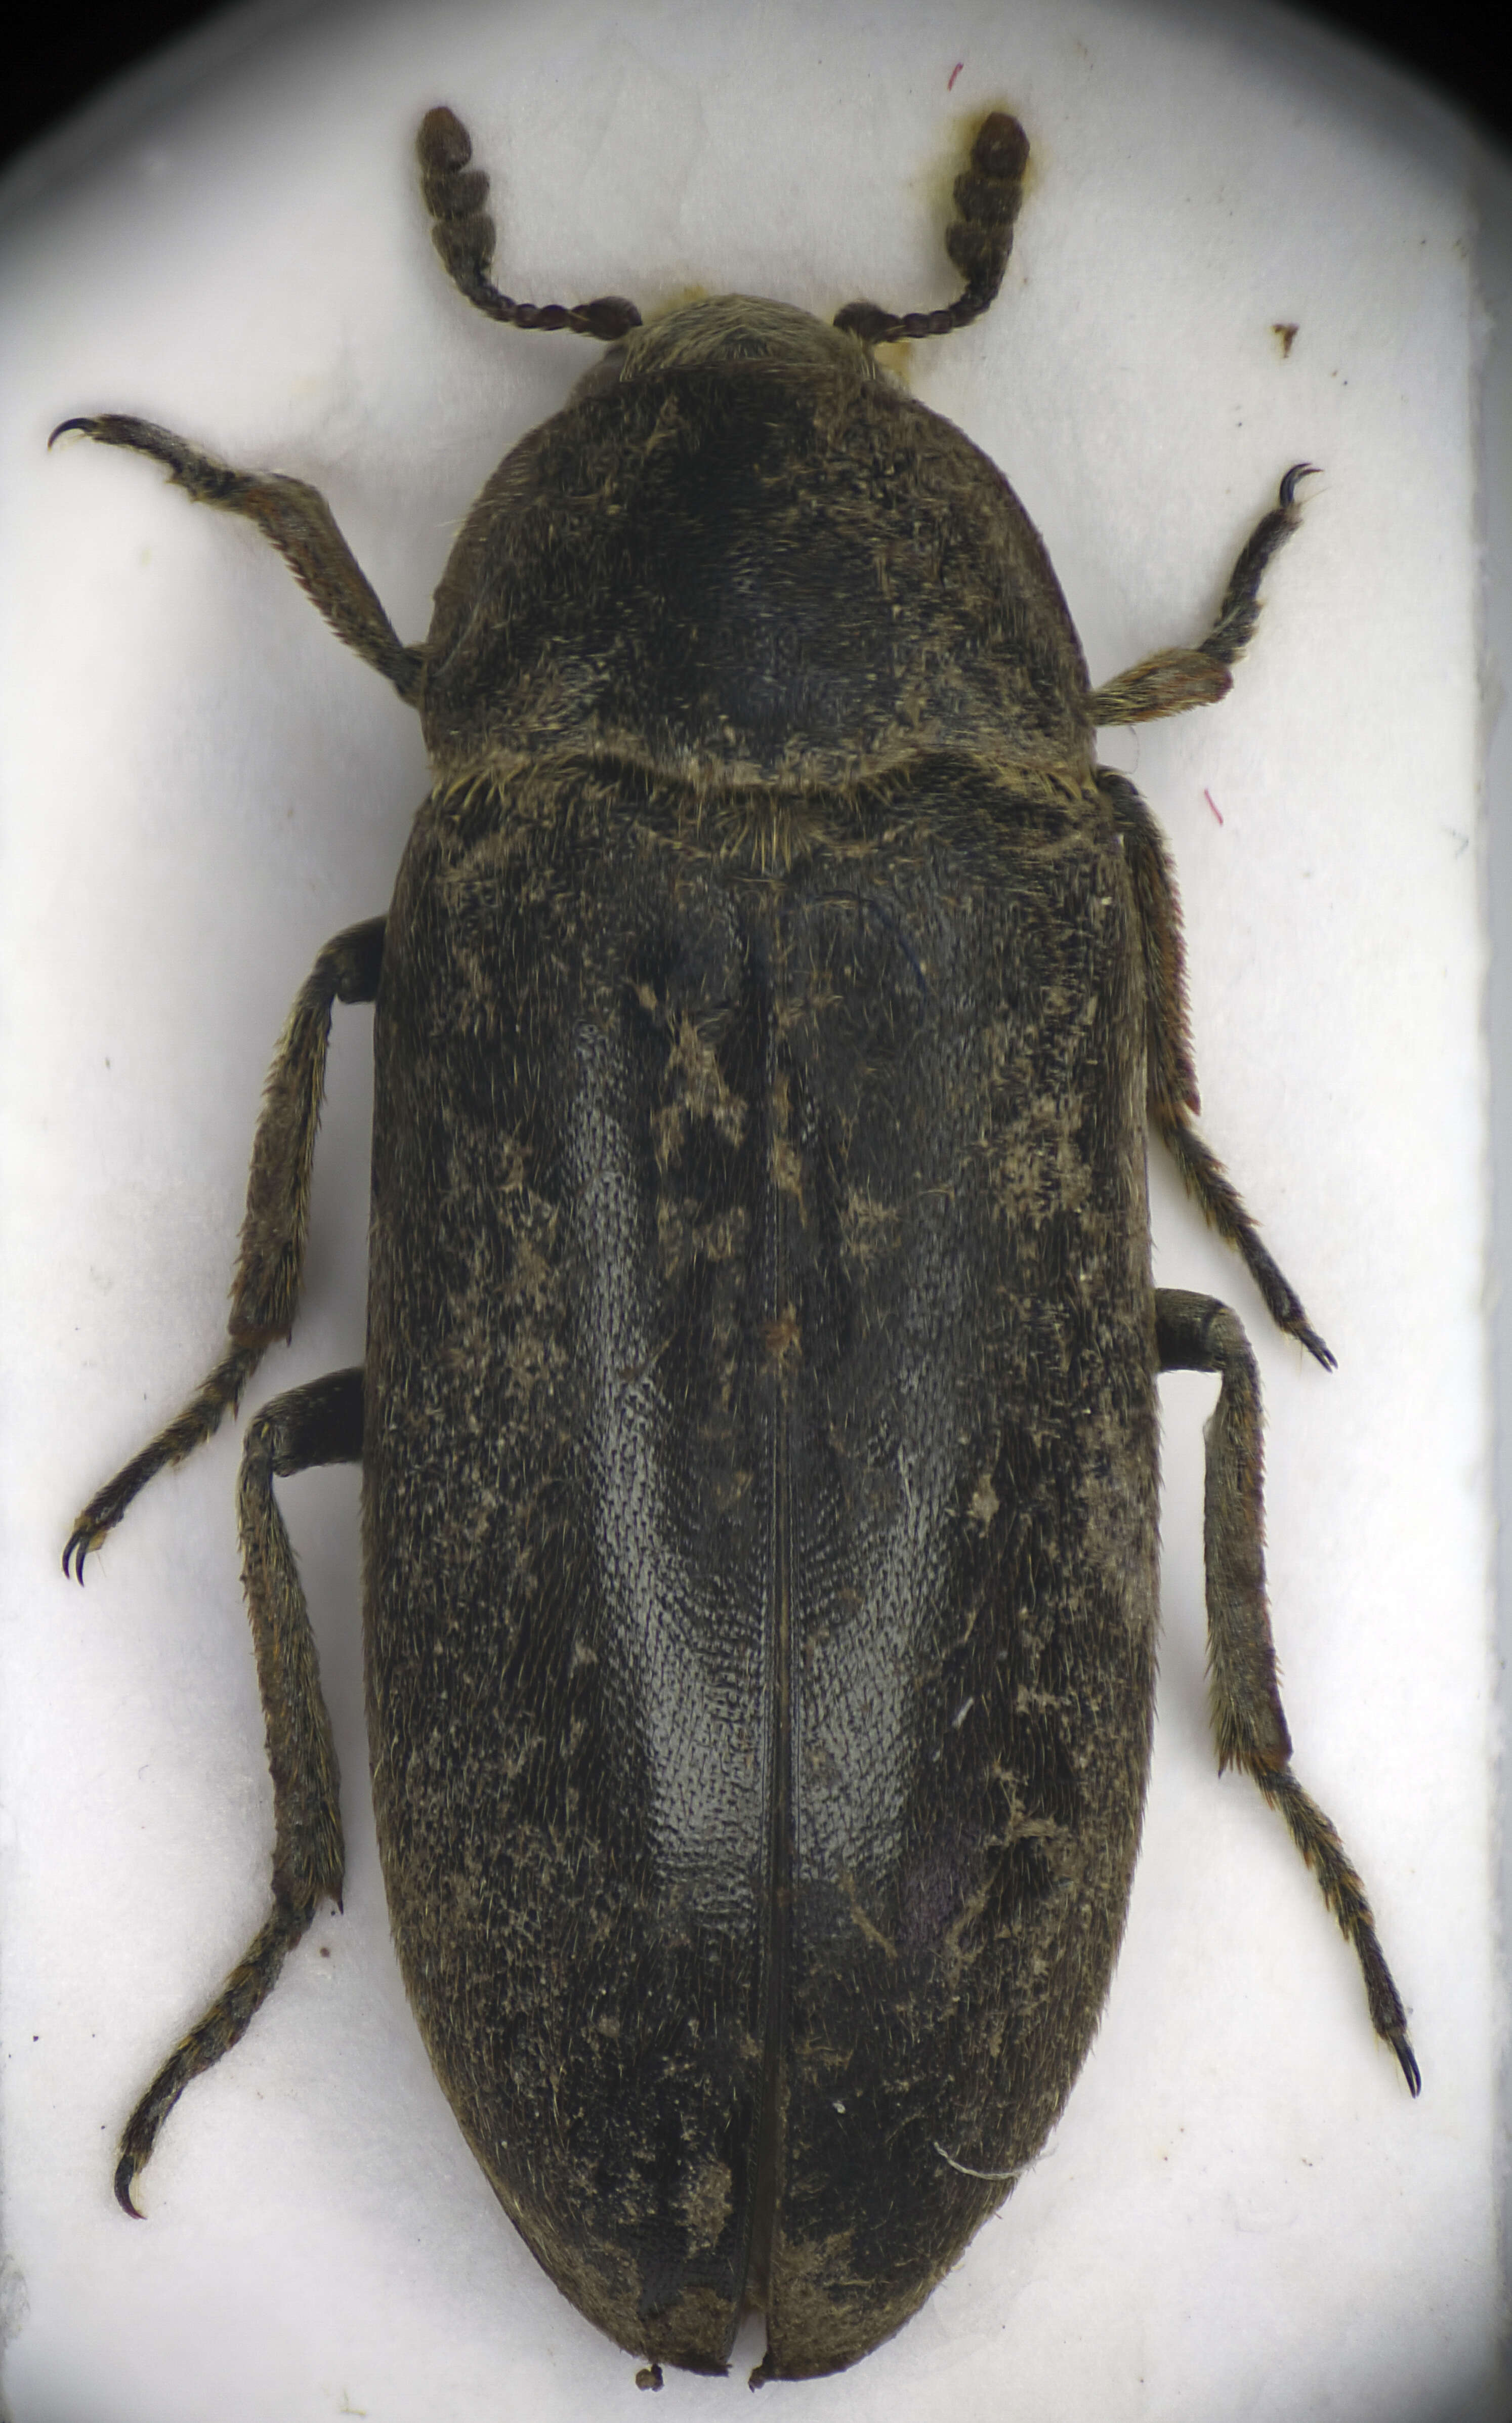 Image of larder beetle